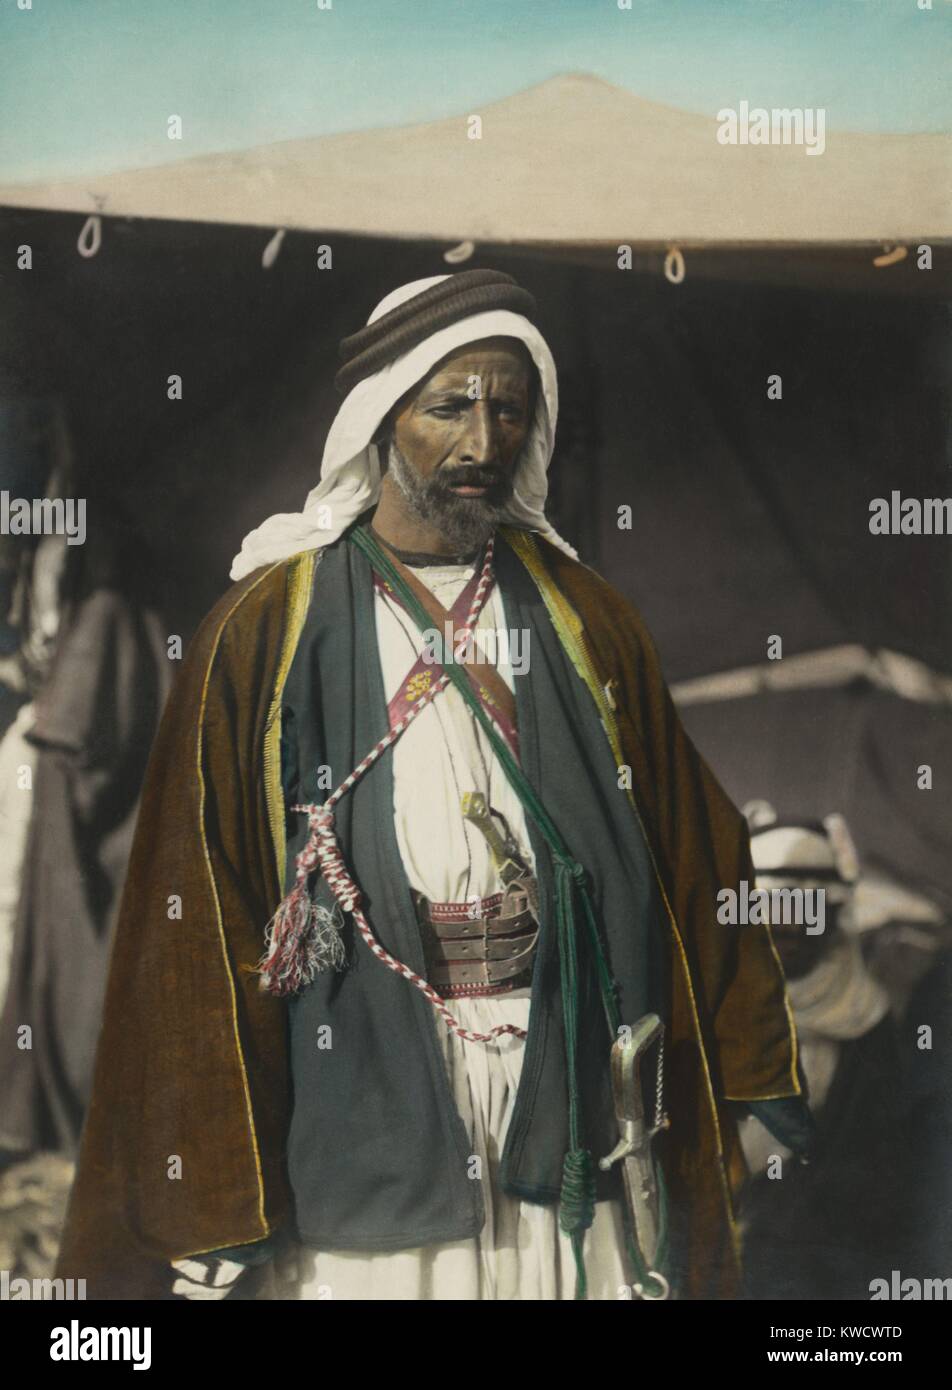 Auda Abu Tayeh, Beduinen, Chef des Howeitat Stamm, in der WK 1 arabischen Revolte gekämpft. T.E. Lawrence bezeichnete ihn als den größten Fighting Man im nördlichen Arabien. Er wurde von Anthony Quinn im Film 1962 Lawrence von Arabien (BSLOC 2017 1 210) dargestellt Stockfoto